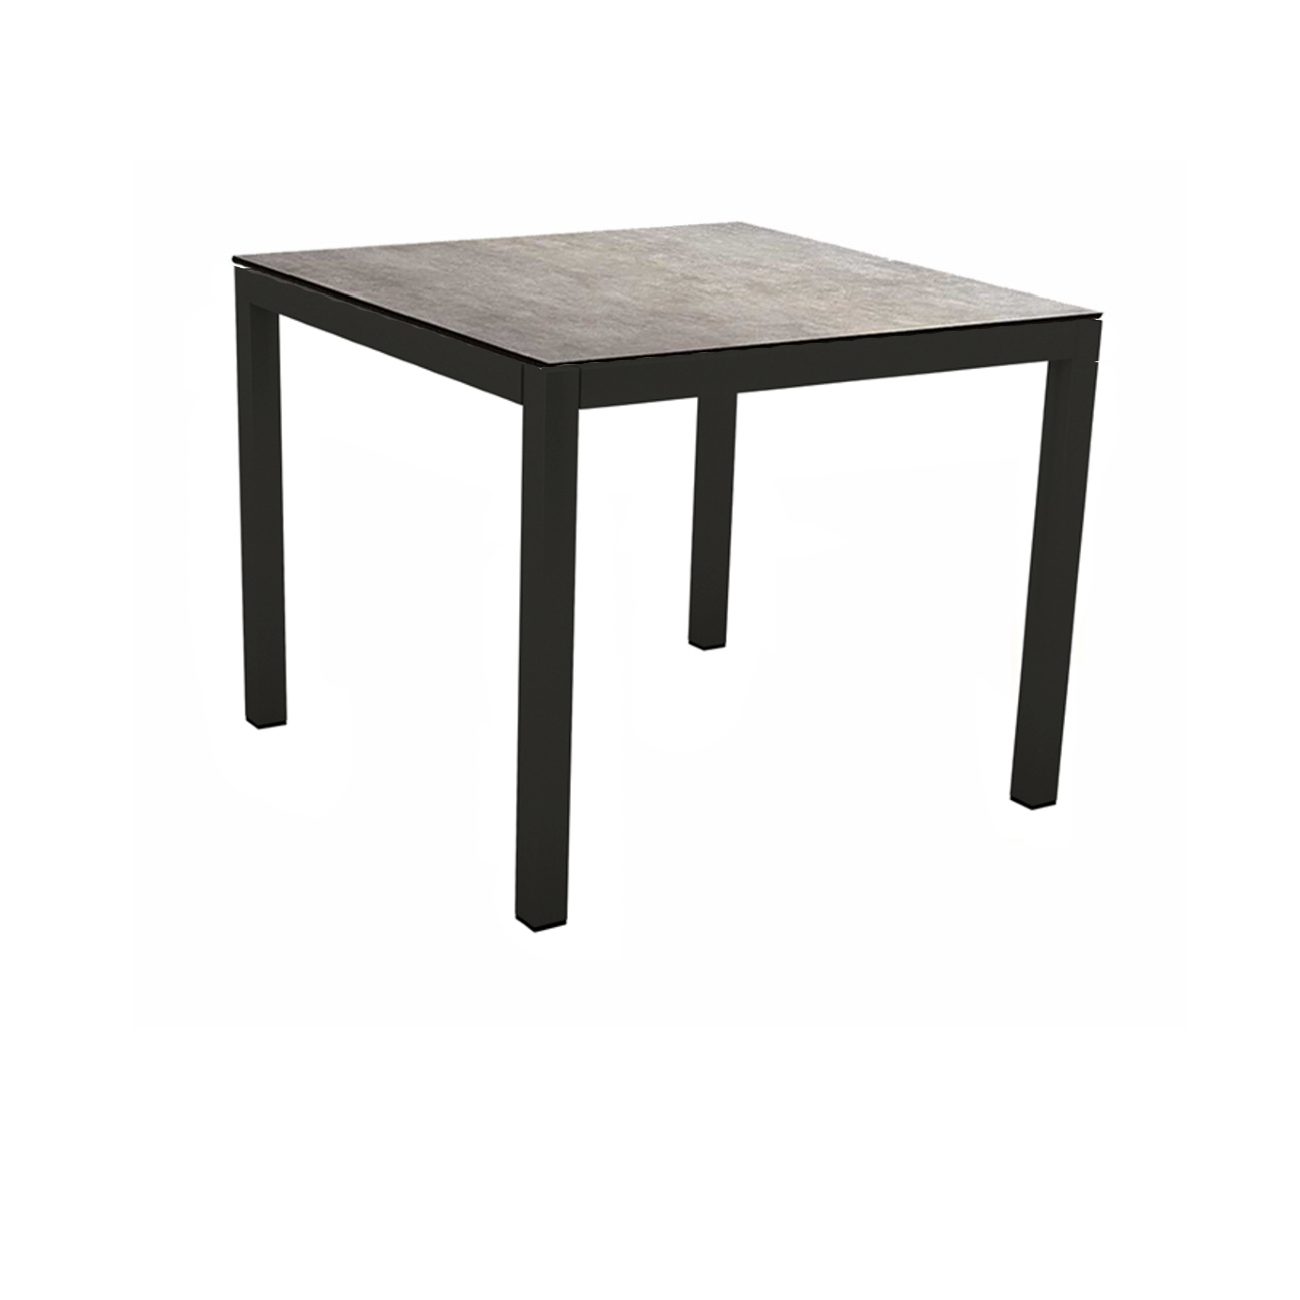 Stern Gartentisch, Gestell Aluminium schwarz matt, Tischplatte HPL Metallic Grau, 80x80 cm